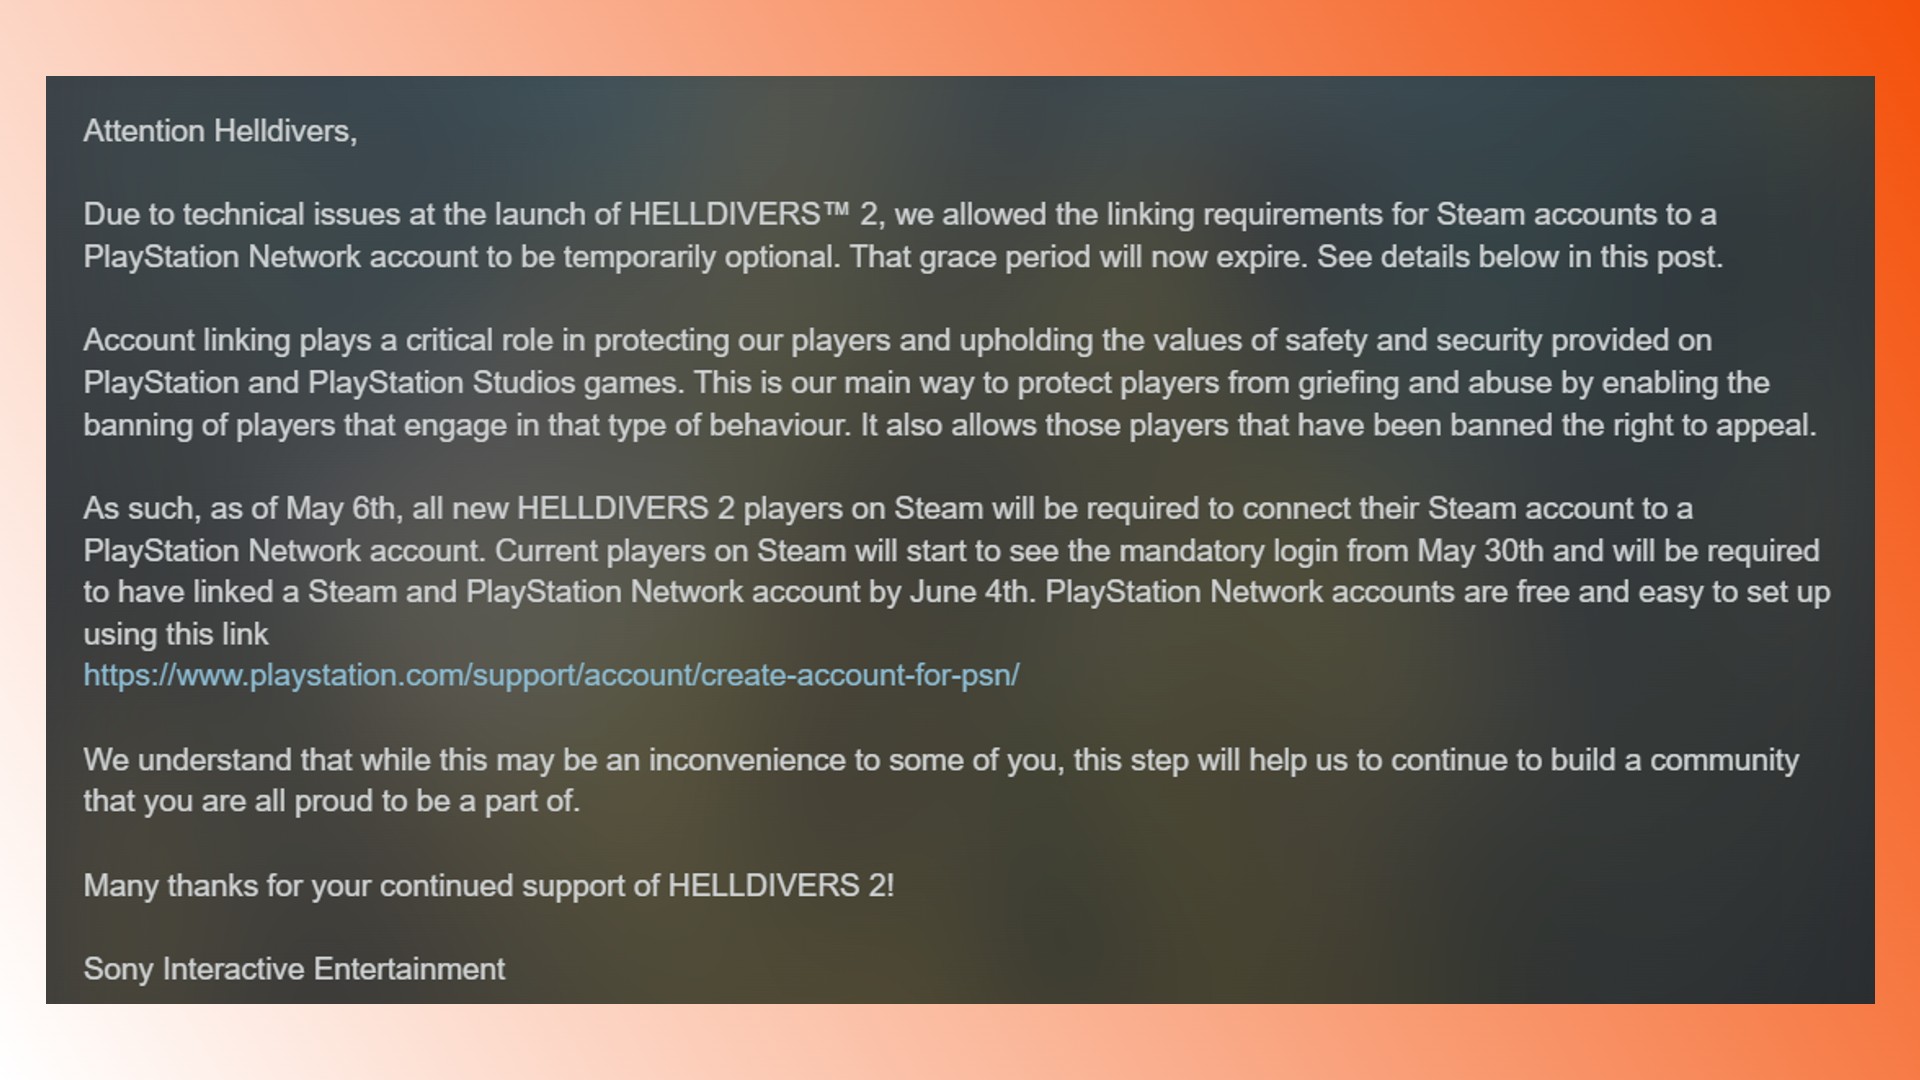 Cuenta vinculada de Helldivers 2: un aviso sobre la vinculación de cuentas de Steam de Helldivers 2